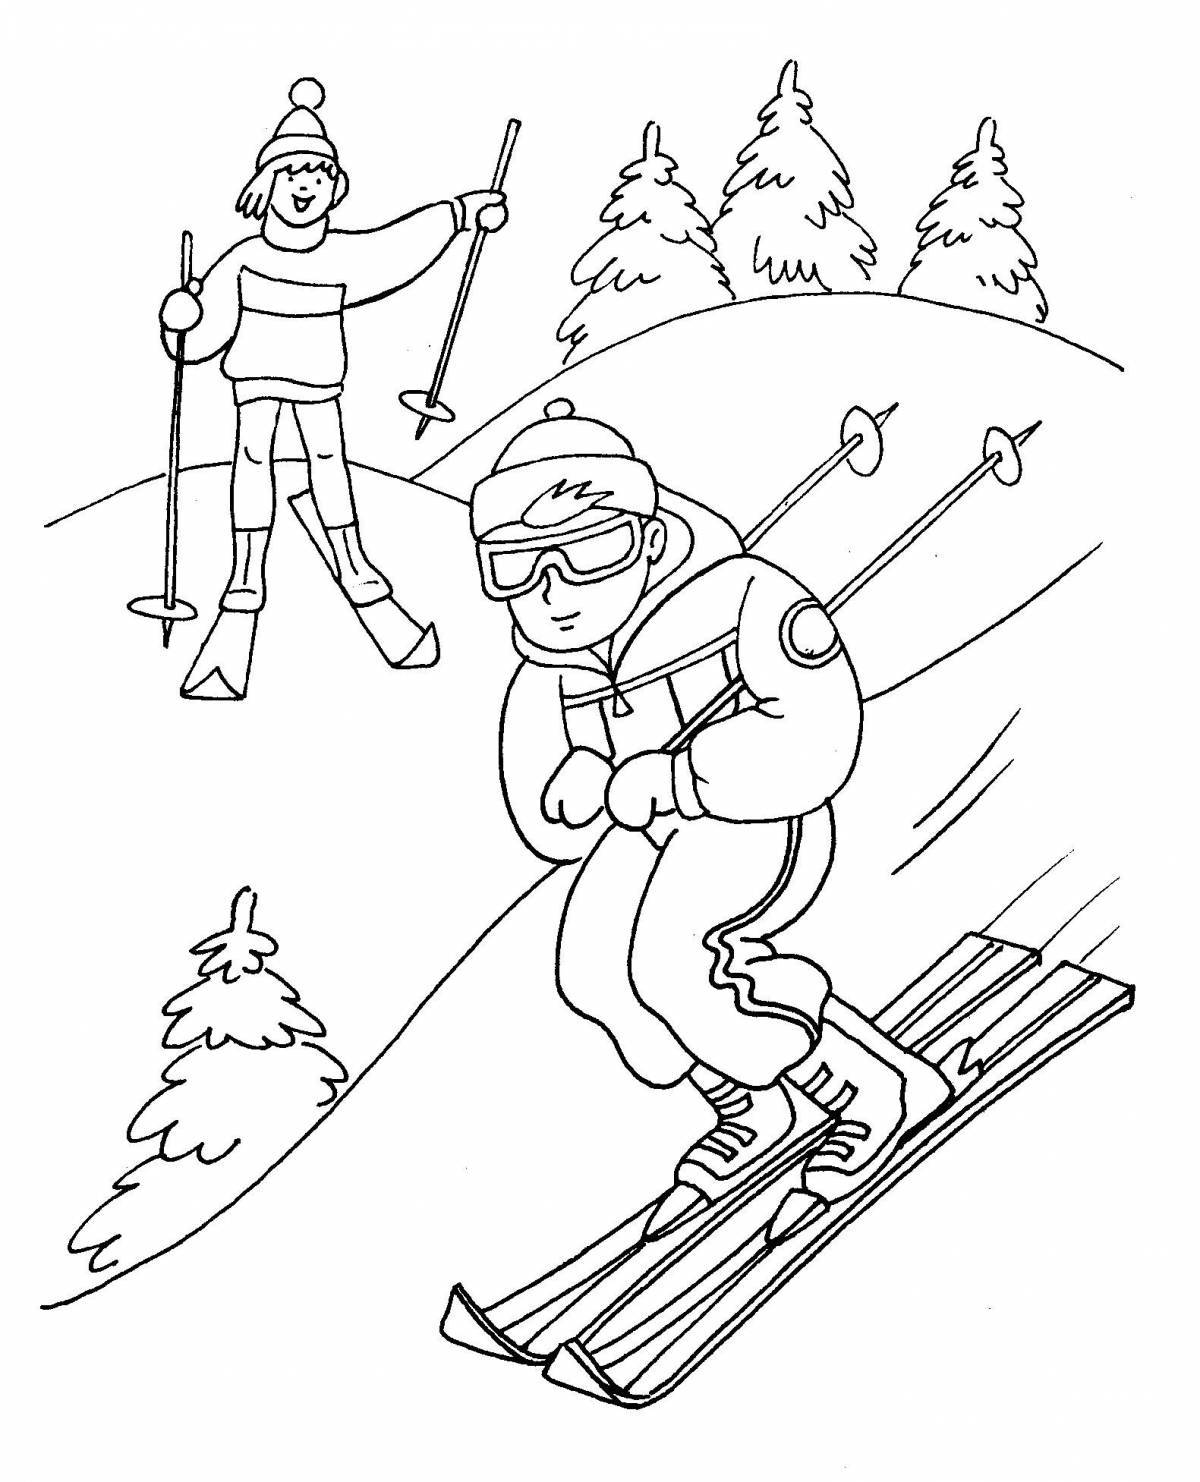 Skier for children #3